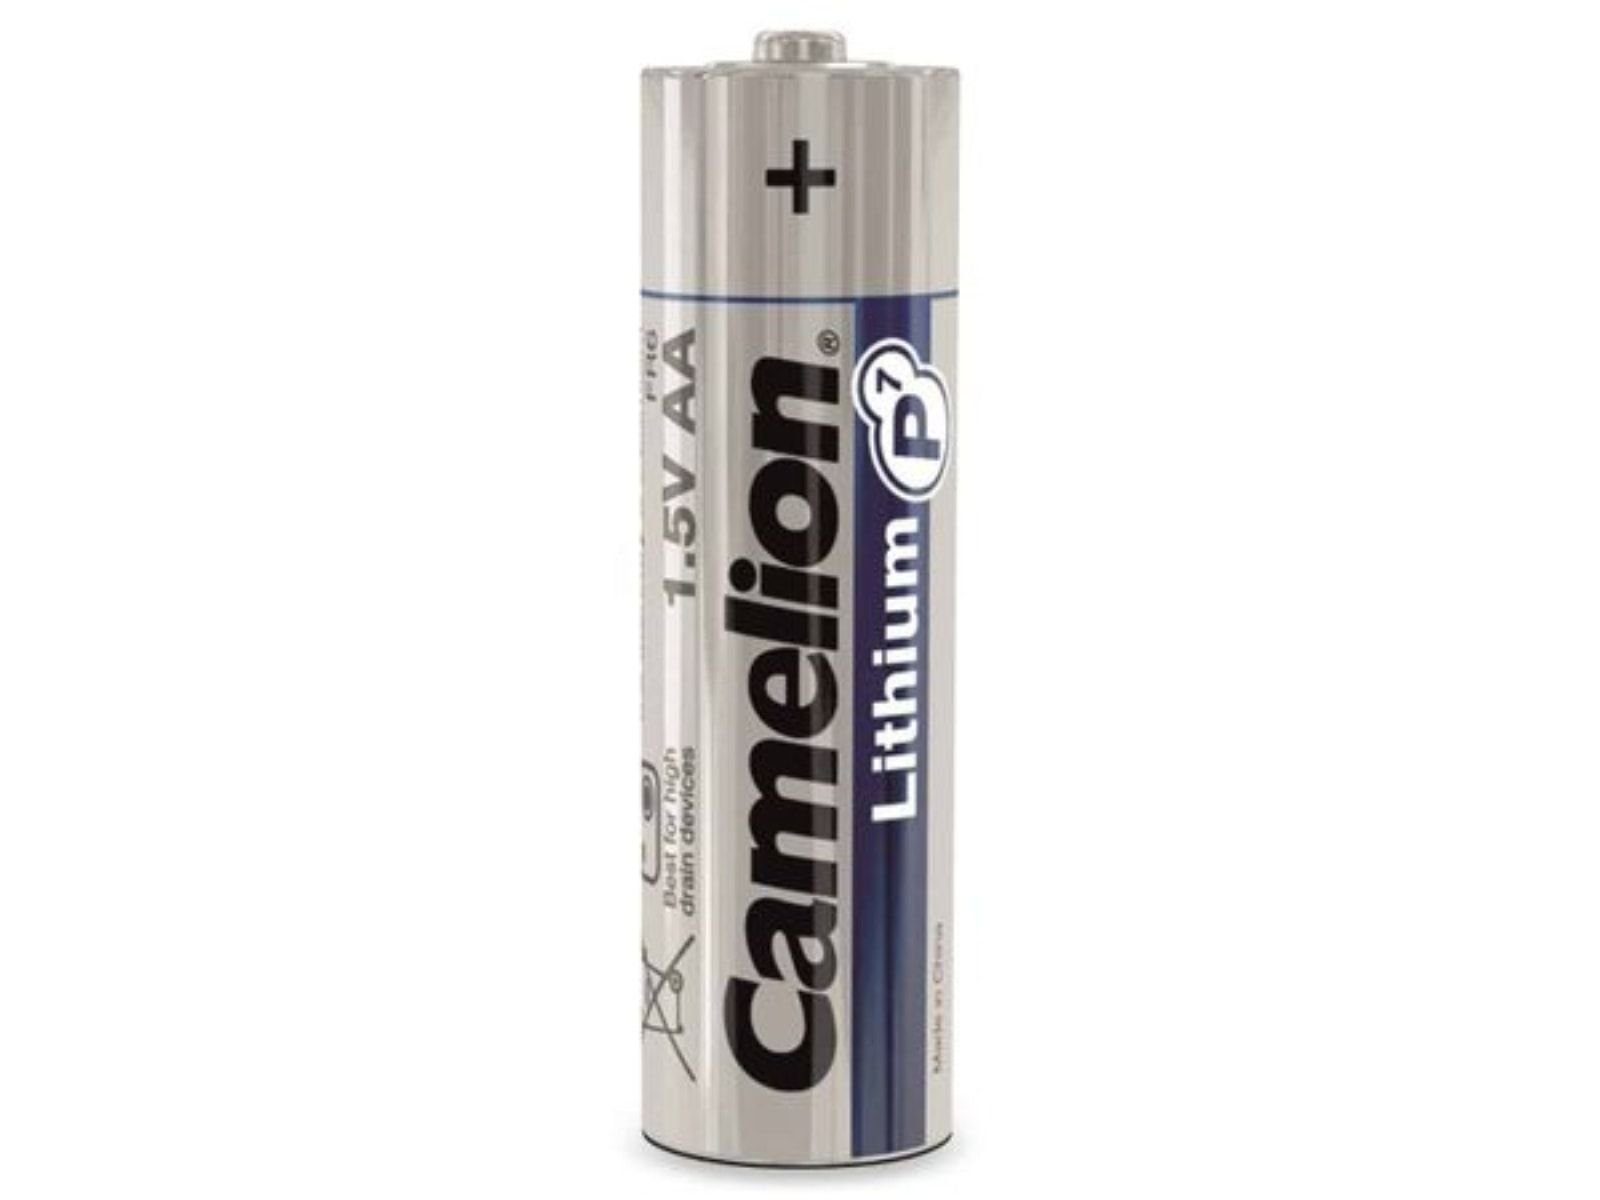 Camelion CAMELION Lithium, Batterie FR6, Mignon-Batterie, 2Stück